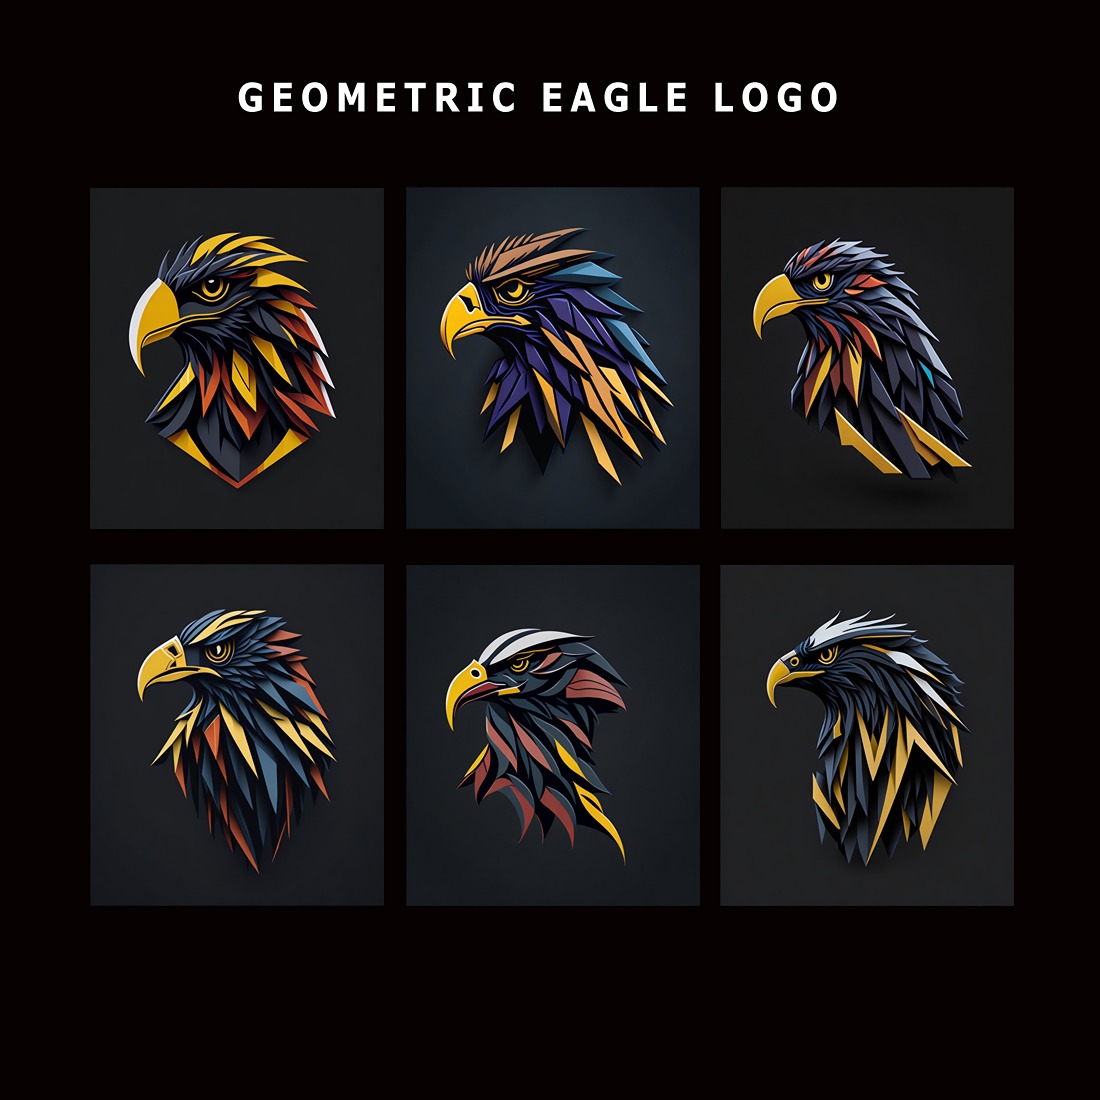 Eagle - Geometric Logo Design Template, eagle business logo, eagle vector logo, eagle icon logo, eagle fashion logo preview image.